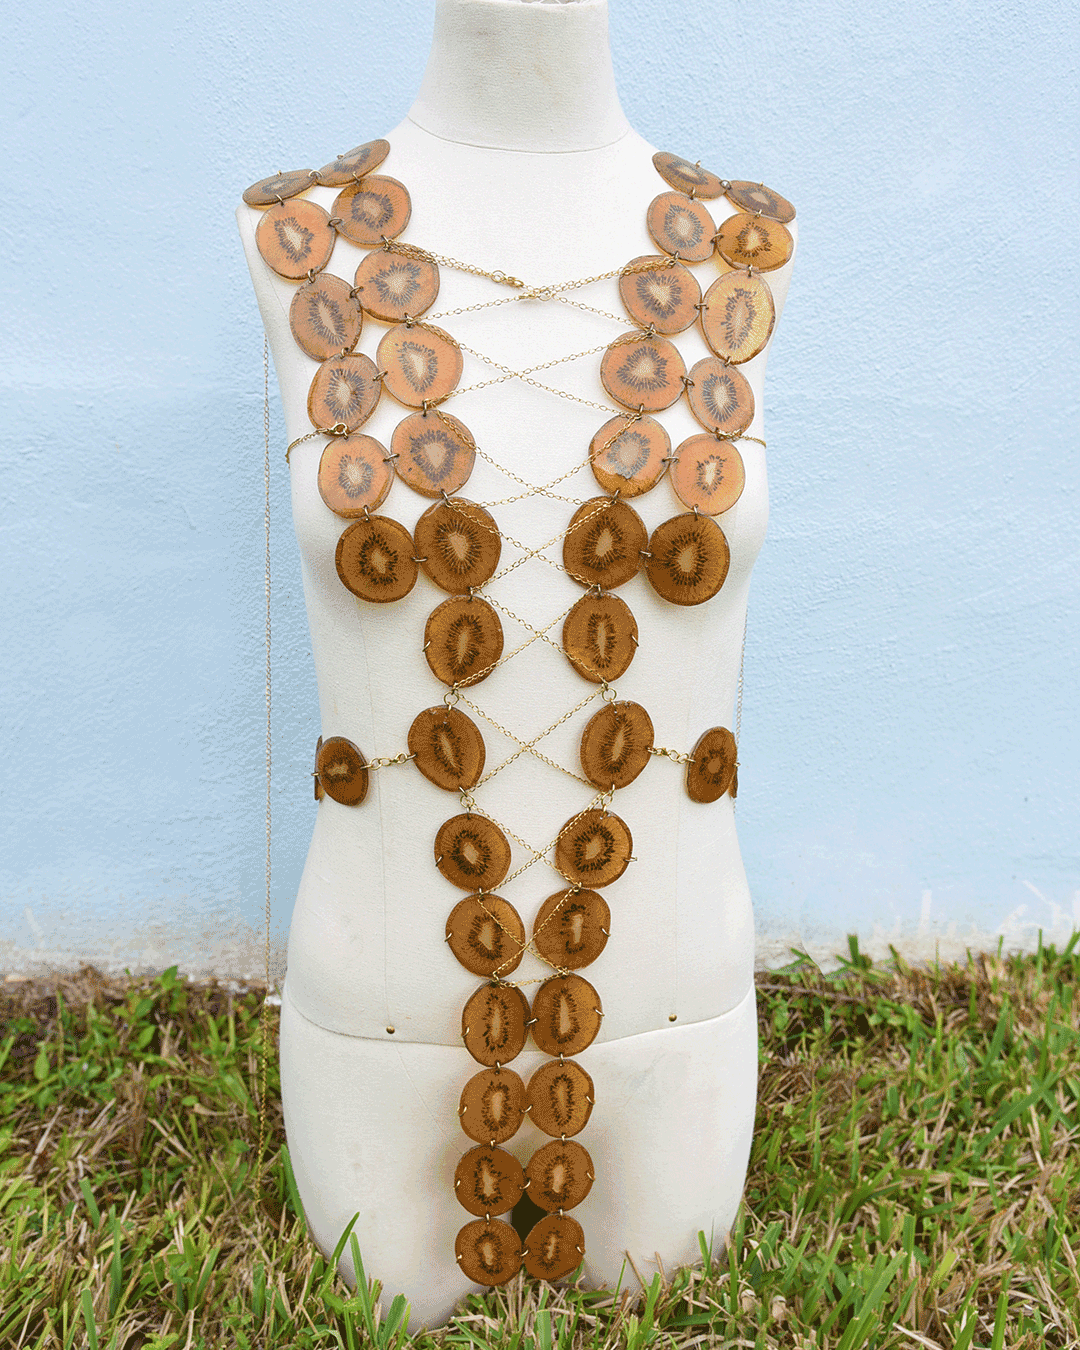 Real kiwi body jewelry designed by Liliana Salazar